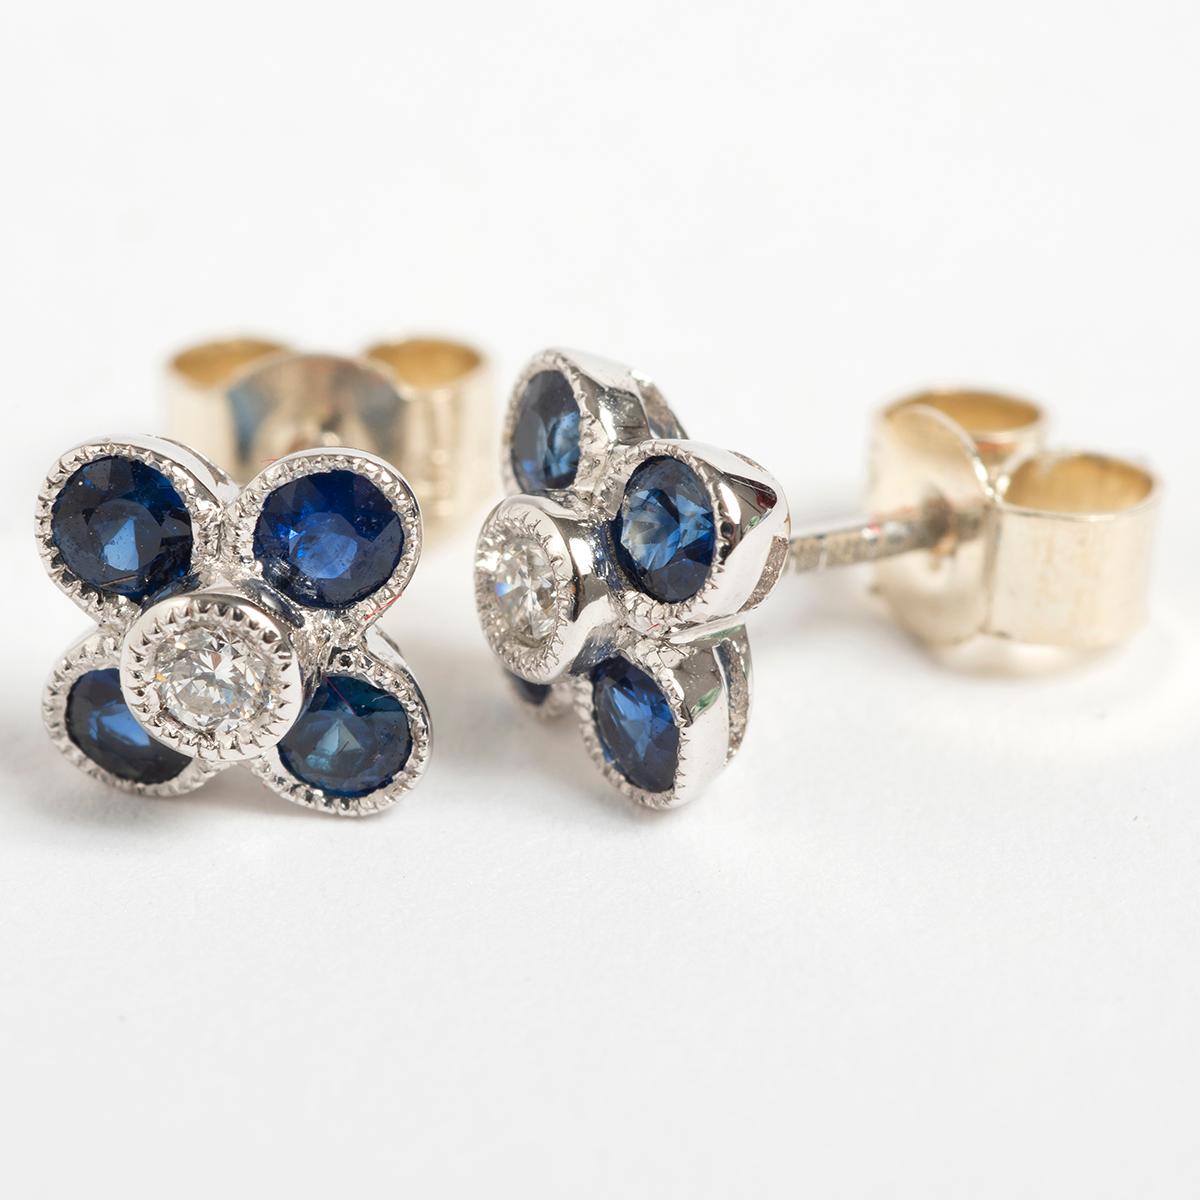 Women's Pretty Petal Shaped Diamond & Sapphire Stud Earrings, .06 carat. For Sale